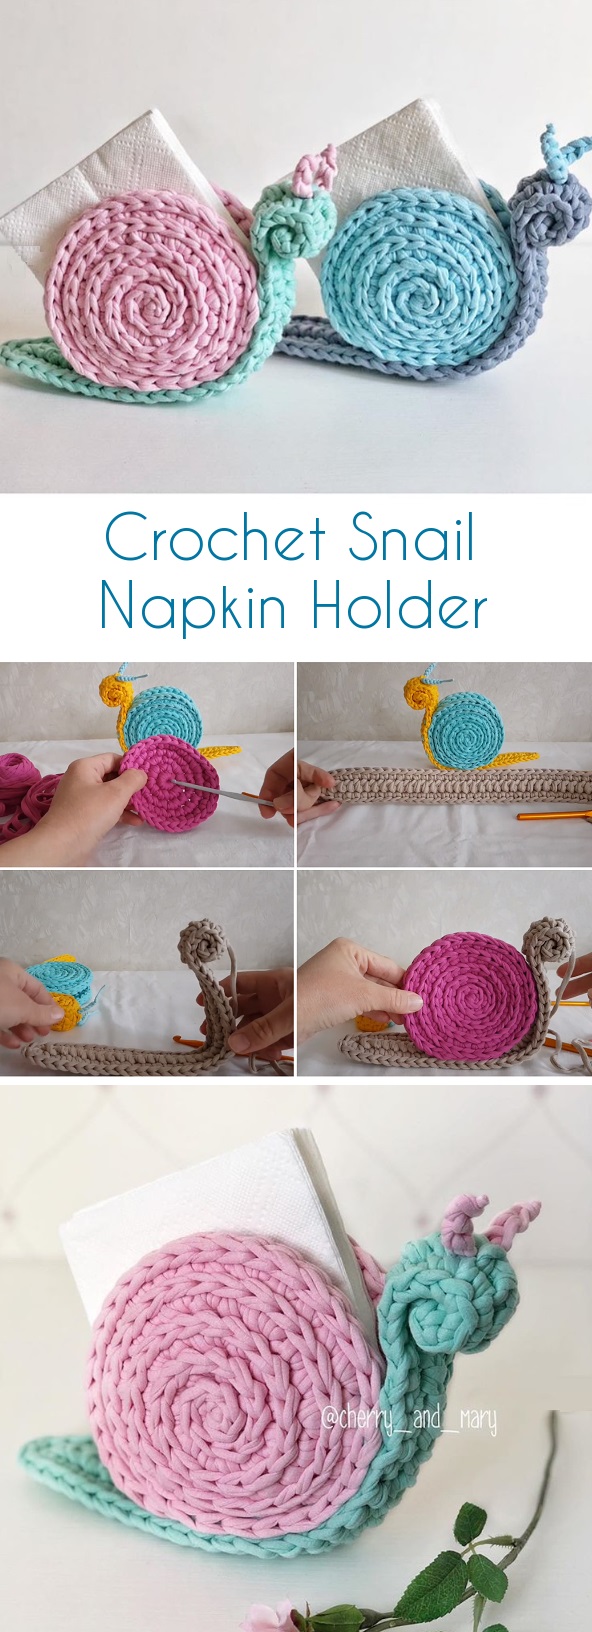 Crochet Snail Napkin Holder